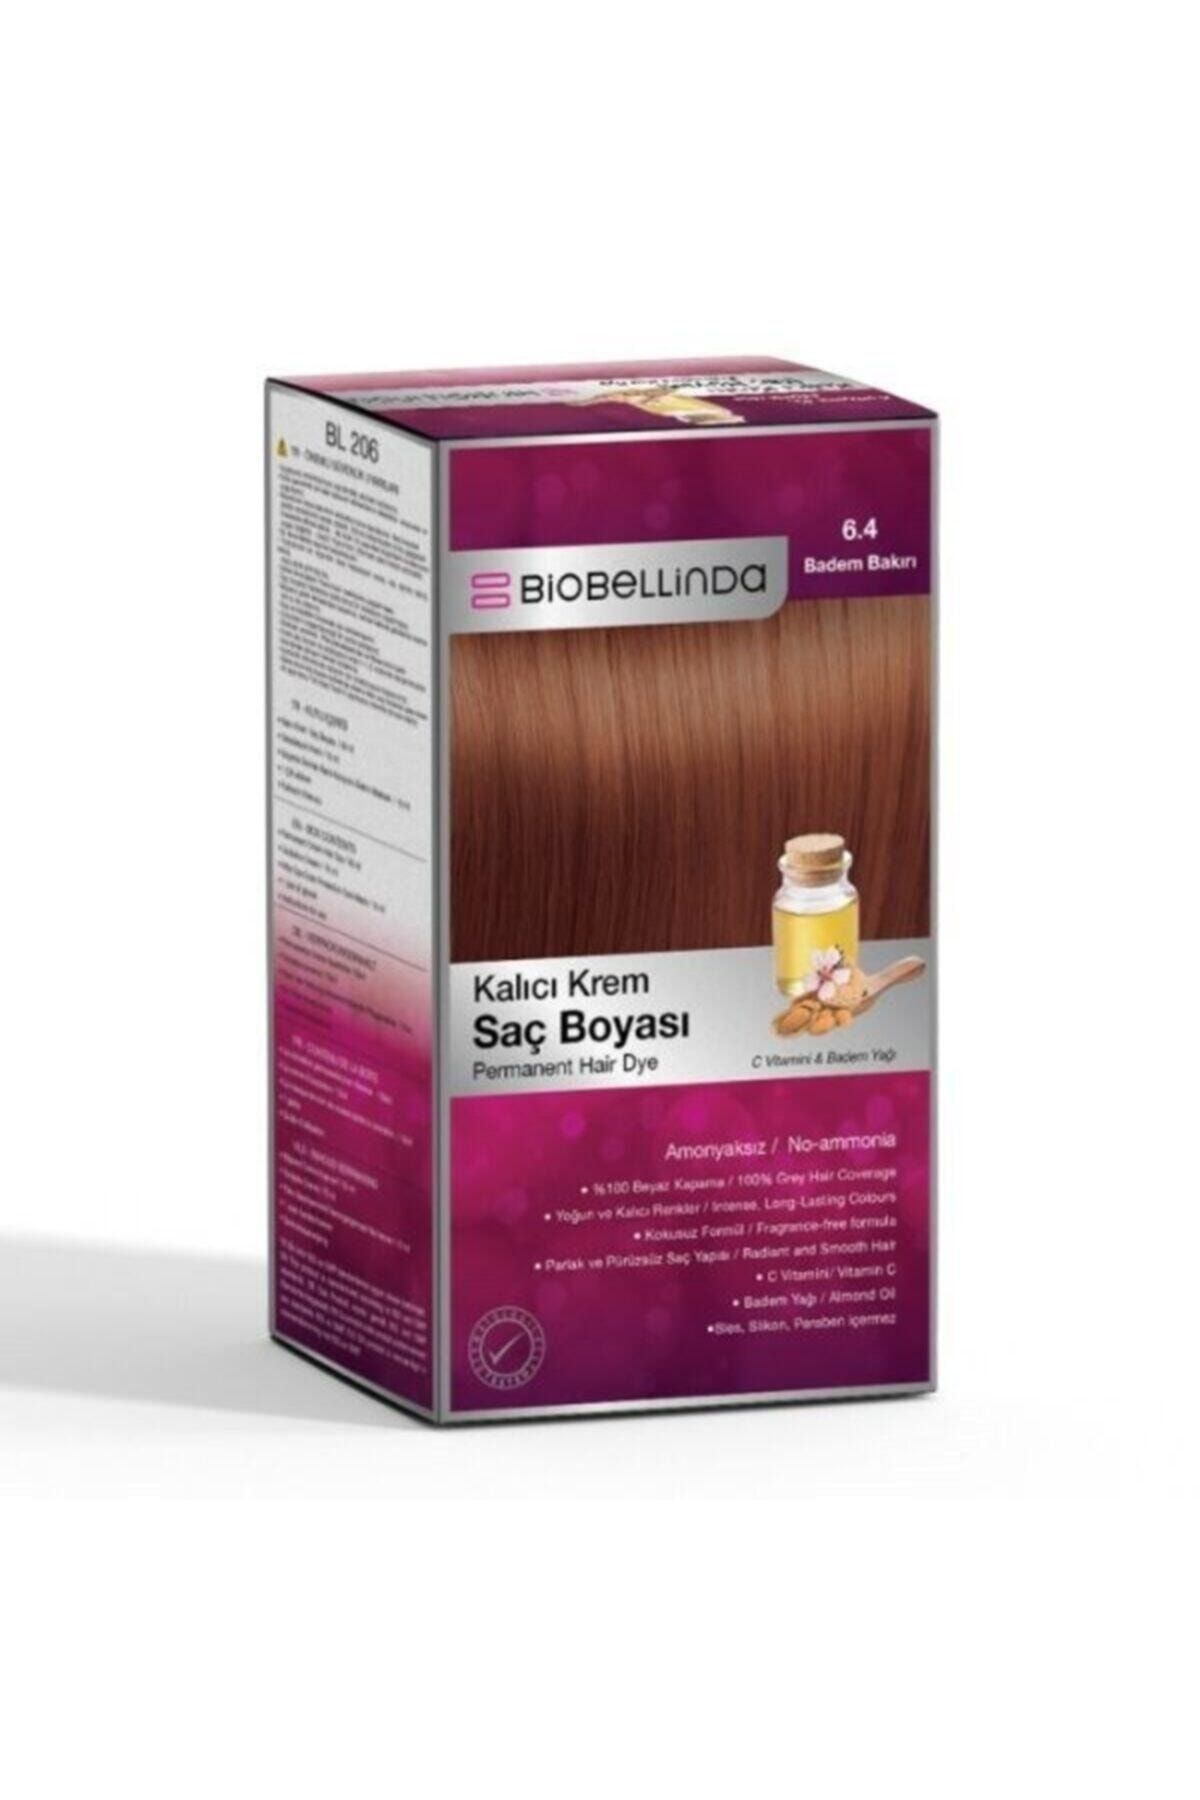 BioBellinda Saç Boyası 6.4 Badem Bakırı